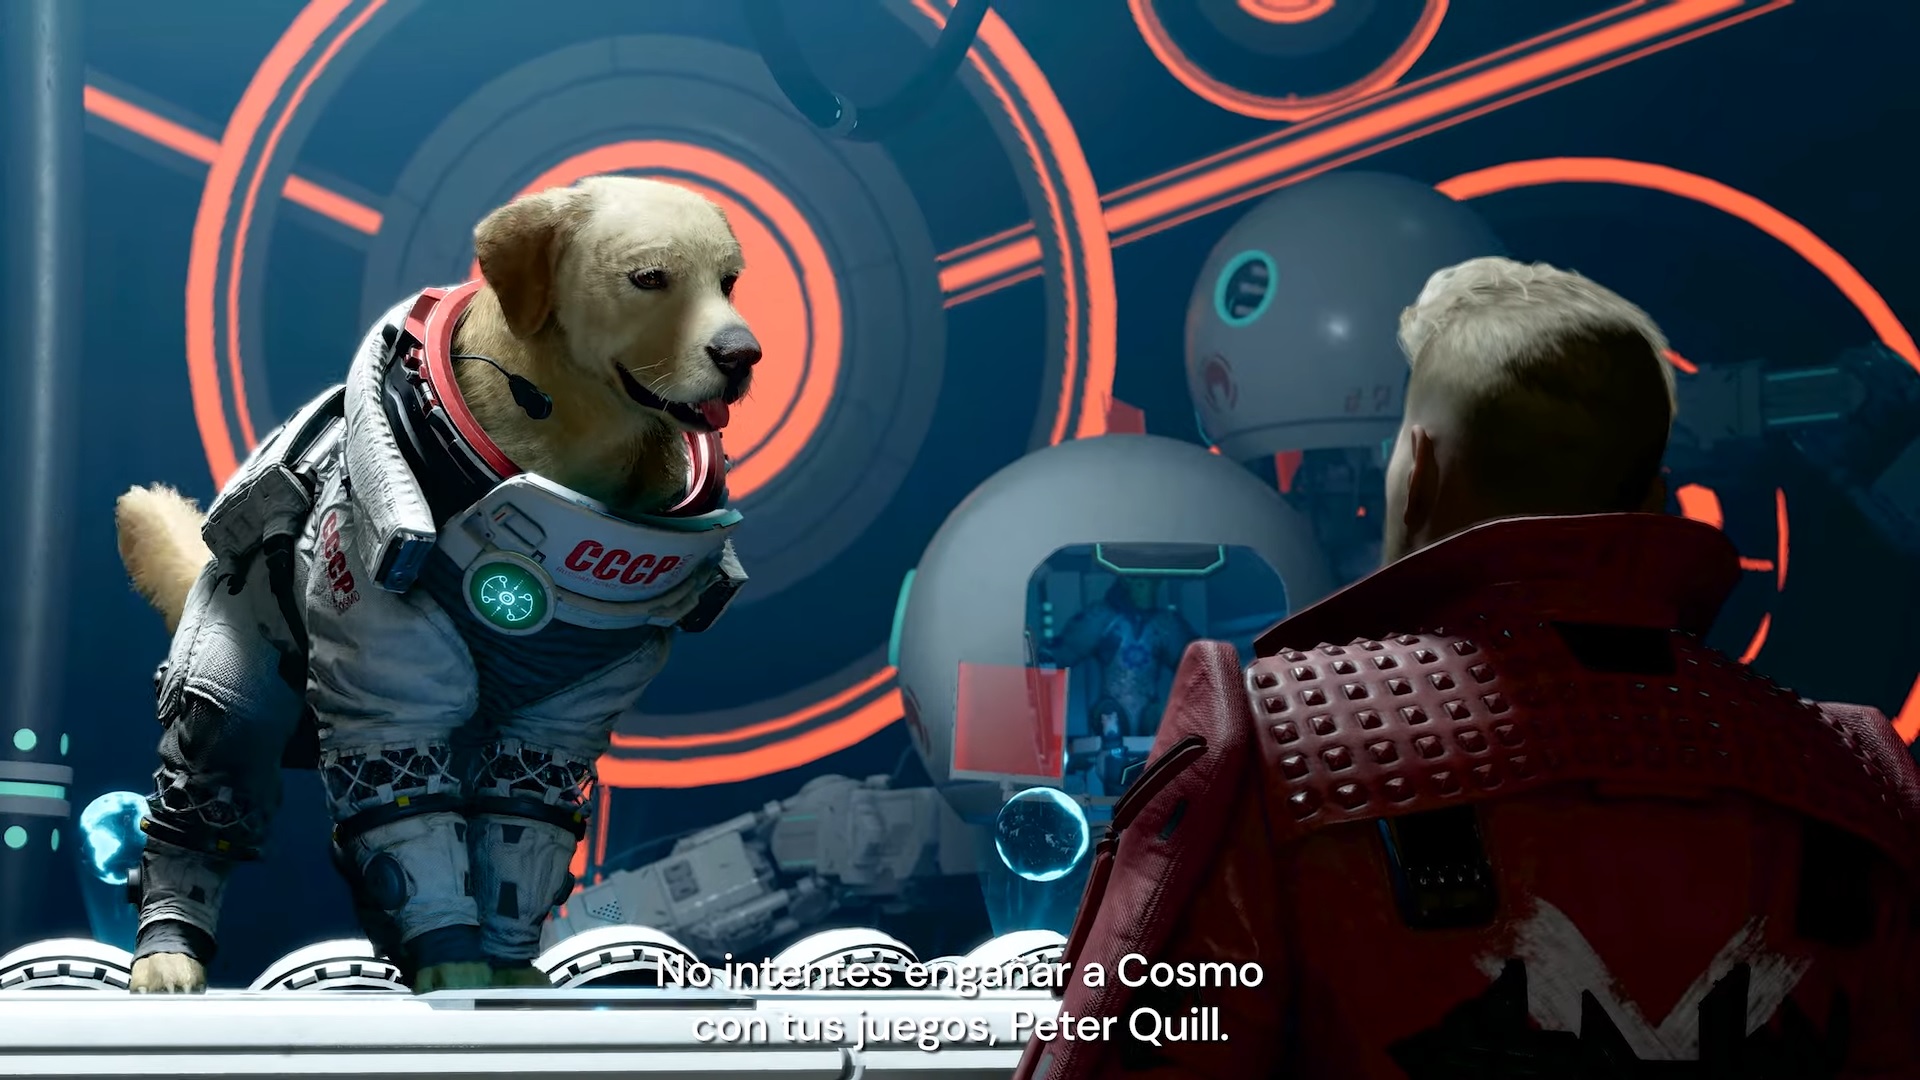 Eidos-Montréal publicó un nuevo video de Marvel's Guardians of the Galaxy, donde podrás ver a los Guardianes interactuando con Cosmo